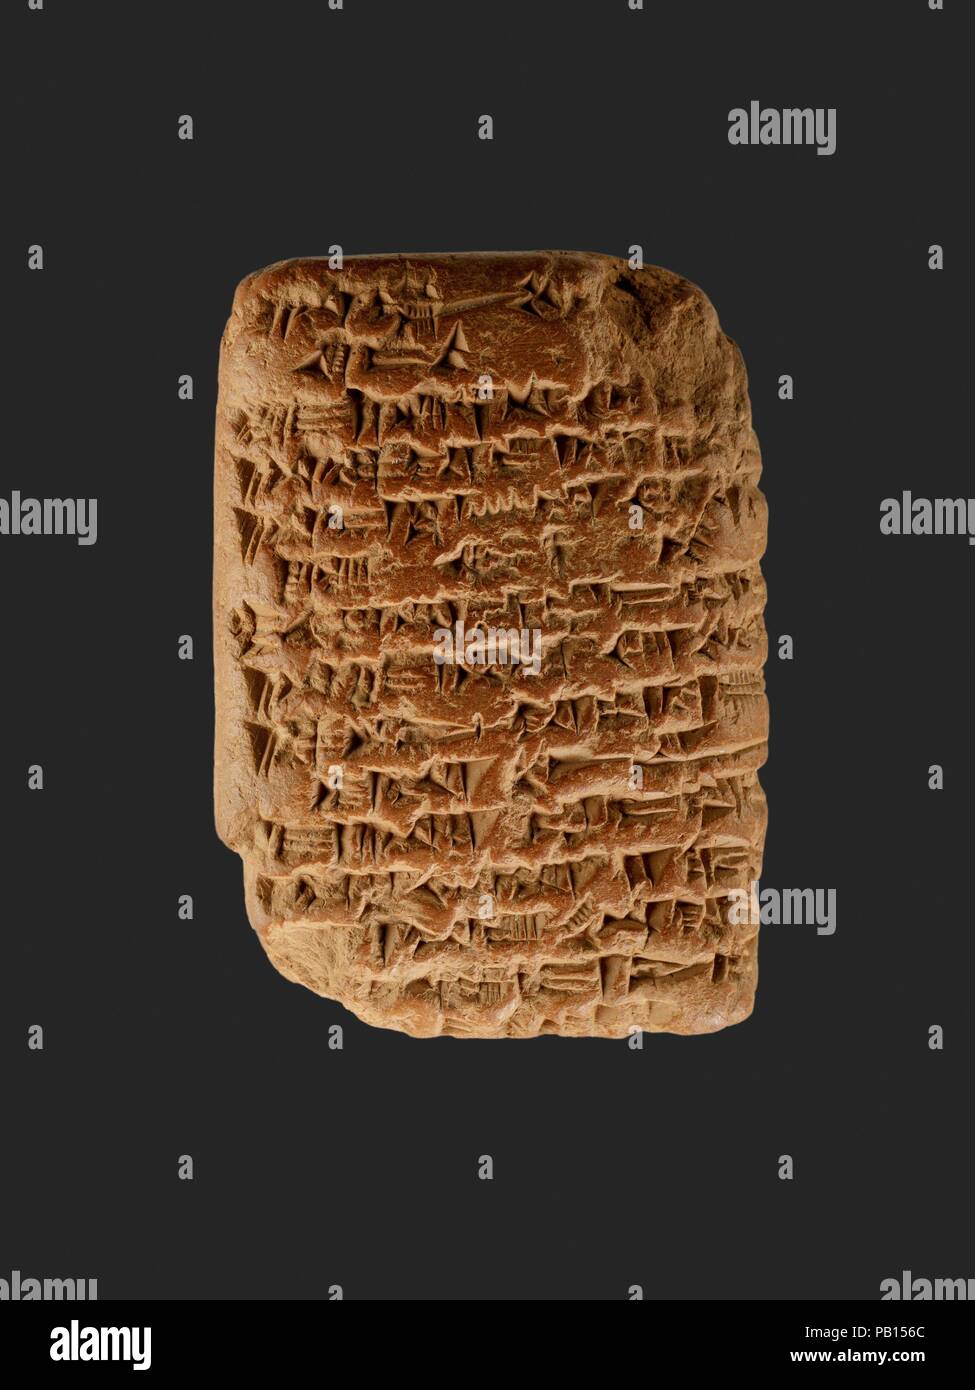 Amarna lettera: Royal Lettera di Ashur-uballit, il re di Assiria, per il re di Egitto. Dimensioni: H. 7.7 cm (3 1/16 in.); W. 5.5 cm (2 3/16 in.). Dynasty: Dynasty 18. Regno: regno di Akhenaten. Data: ca. 1353-1336 A.C. Questo documento è stato trovato nel tardo 1880 presso il sito di Amarna, il capitale religioso di Egitto sotto Akhenaton. Probabilmente è stato originariamente memorizzati negli uffici amministrativi che fanno parte di un complesso di palazzo nella parte centrale della città. È scritto in script cuneiformi su una argilla compressa utilizzando una stilo di canna. La lingua è un dialetto Assiro di accadico, <i>ling Foto Stock